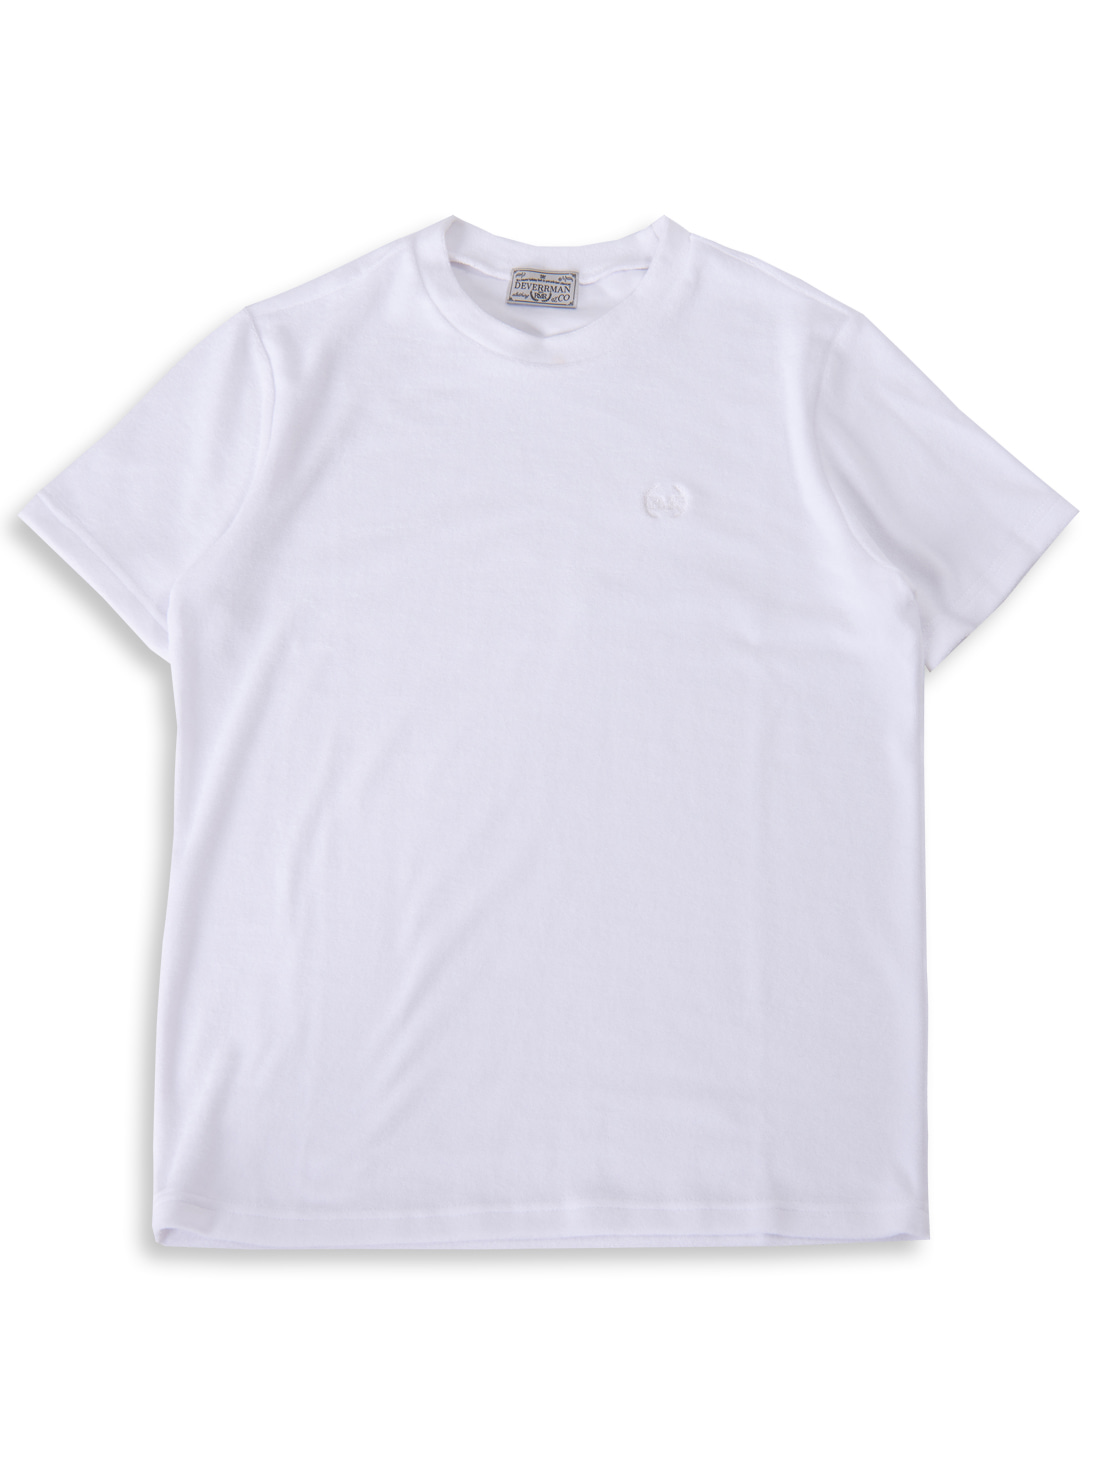 [드베르망]terry cotton emblem T shirt (white)